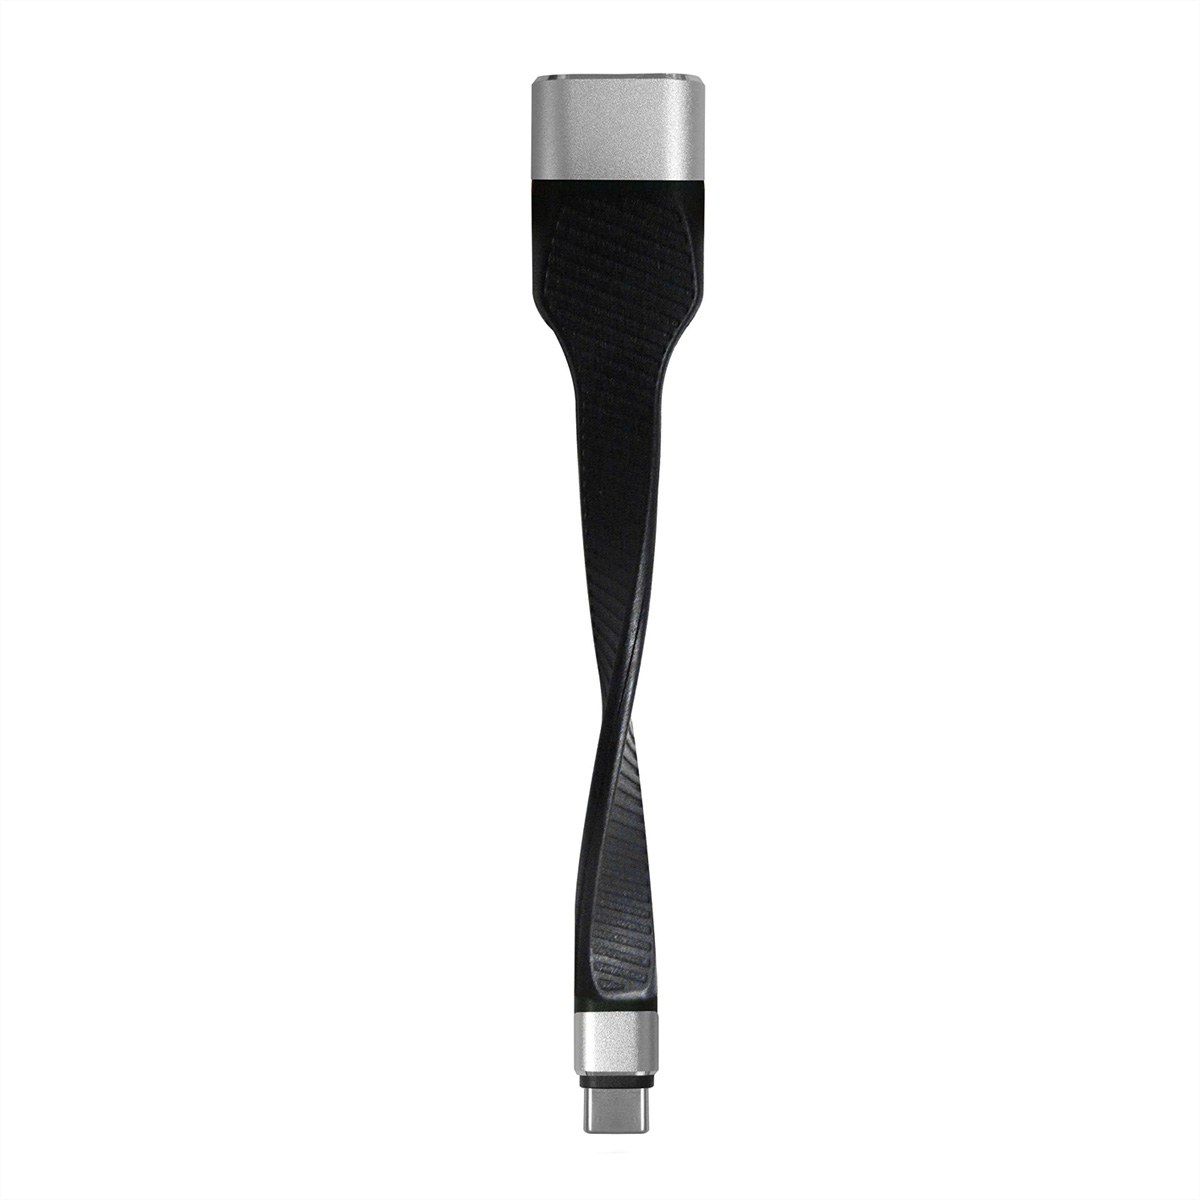 ROLINE Typ C USB ST/BU Display HDMI, - Adapter USB-HDMI Adapter